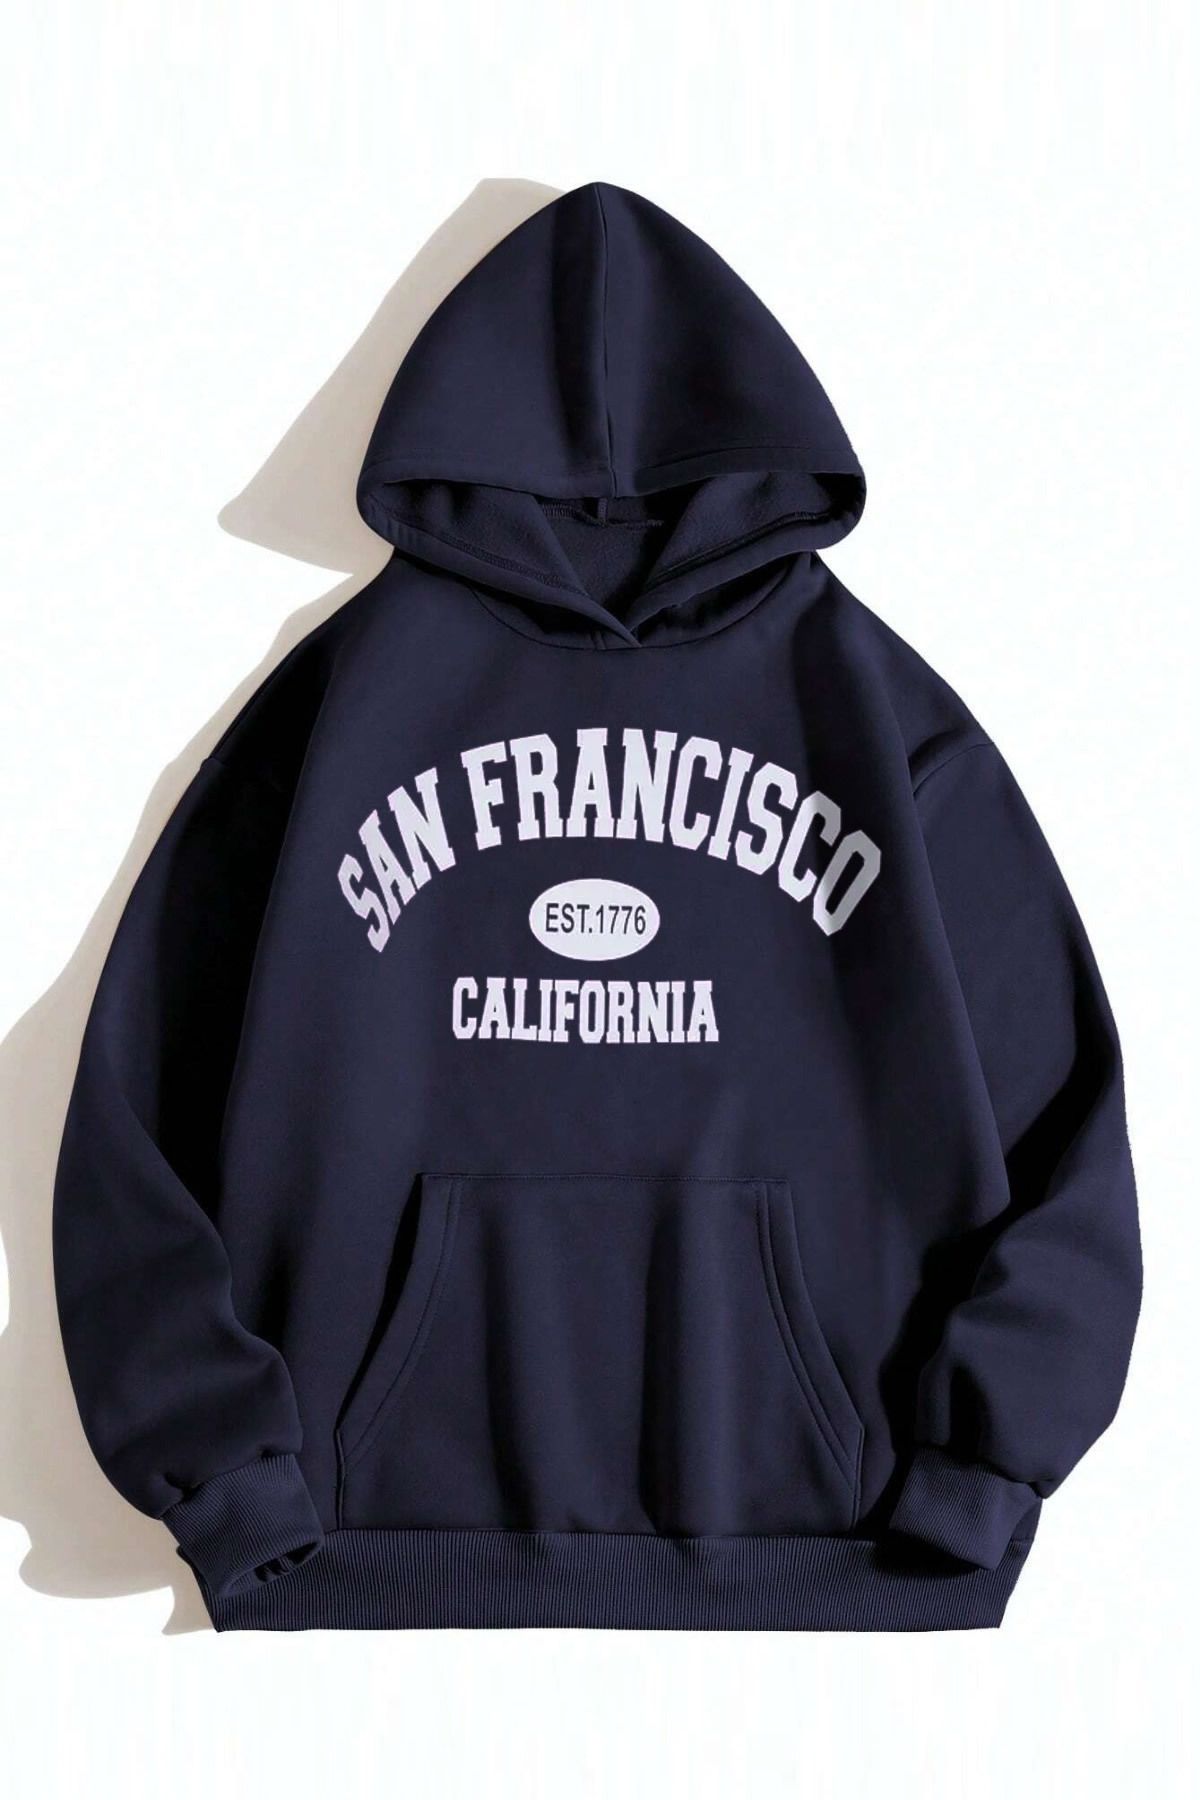 MODAGEN Unisex Lacivert San Francisco Baskılı Oversize Kapşonlu Sweatshirt